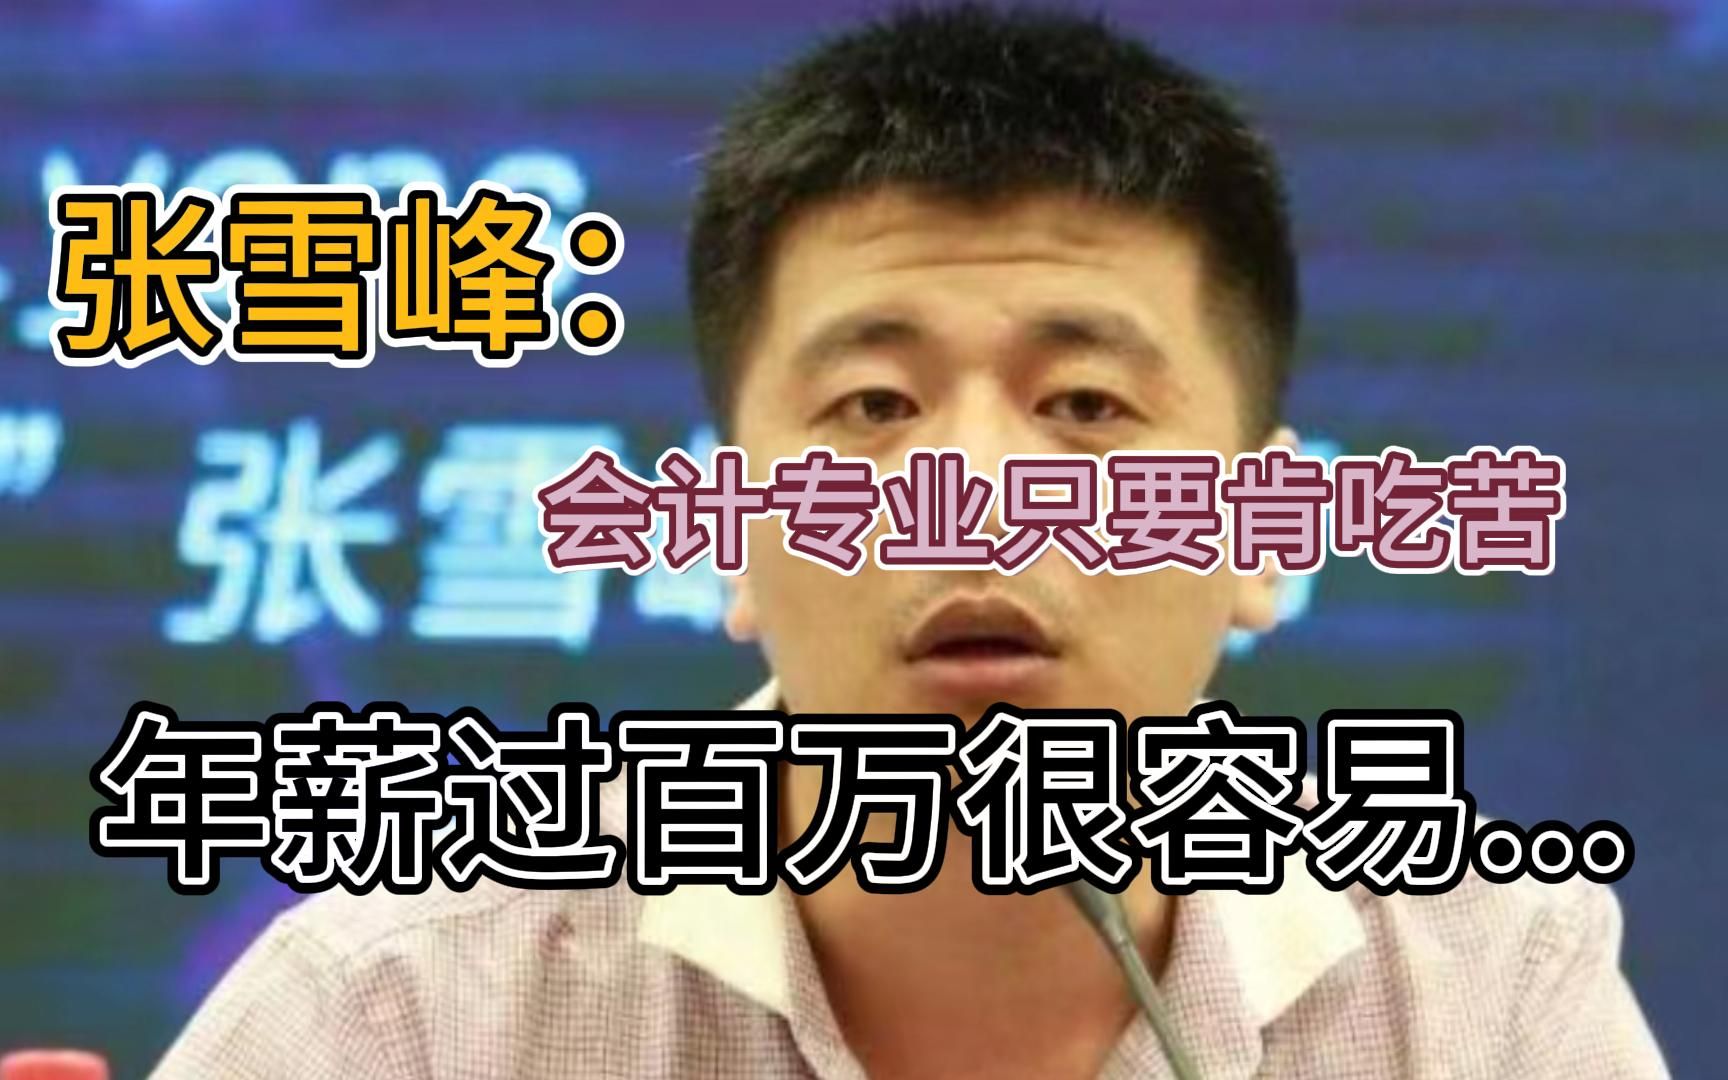 张雪峰：会计专业只要你肯吃苦，年薪过百万很容易，而且在公司里面没人敢得罪你